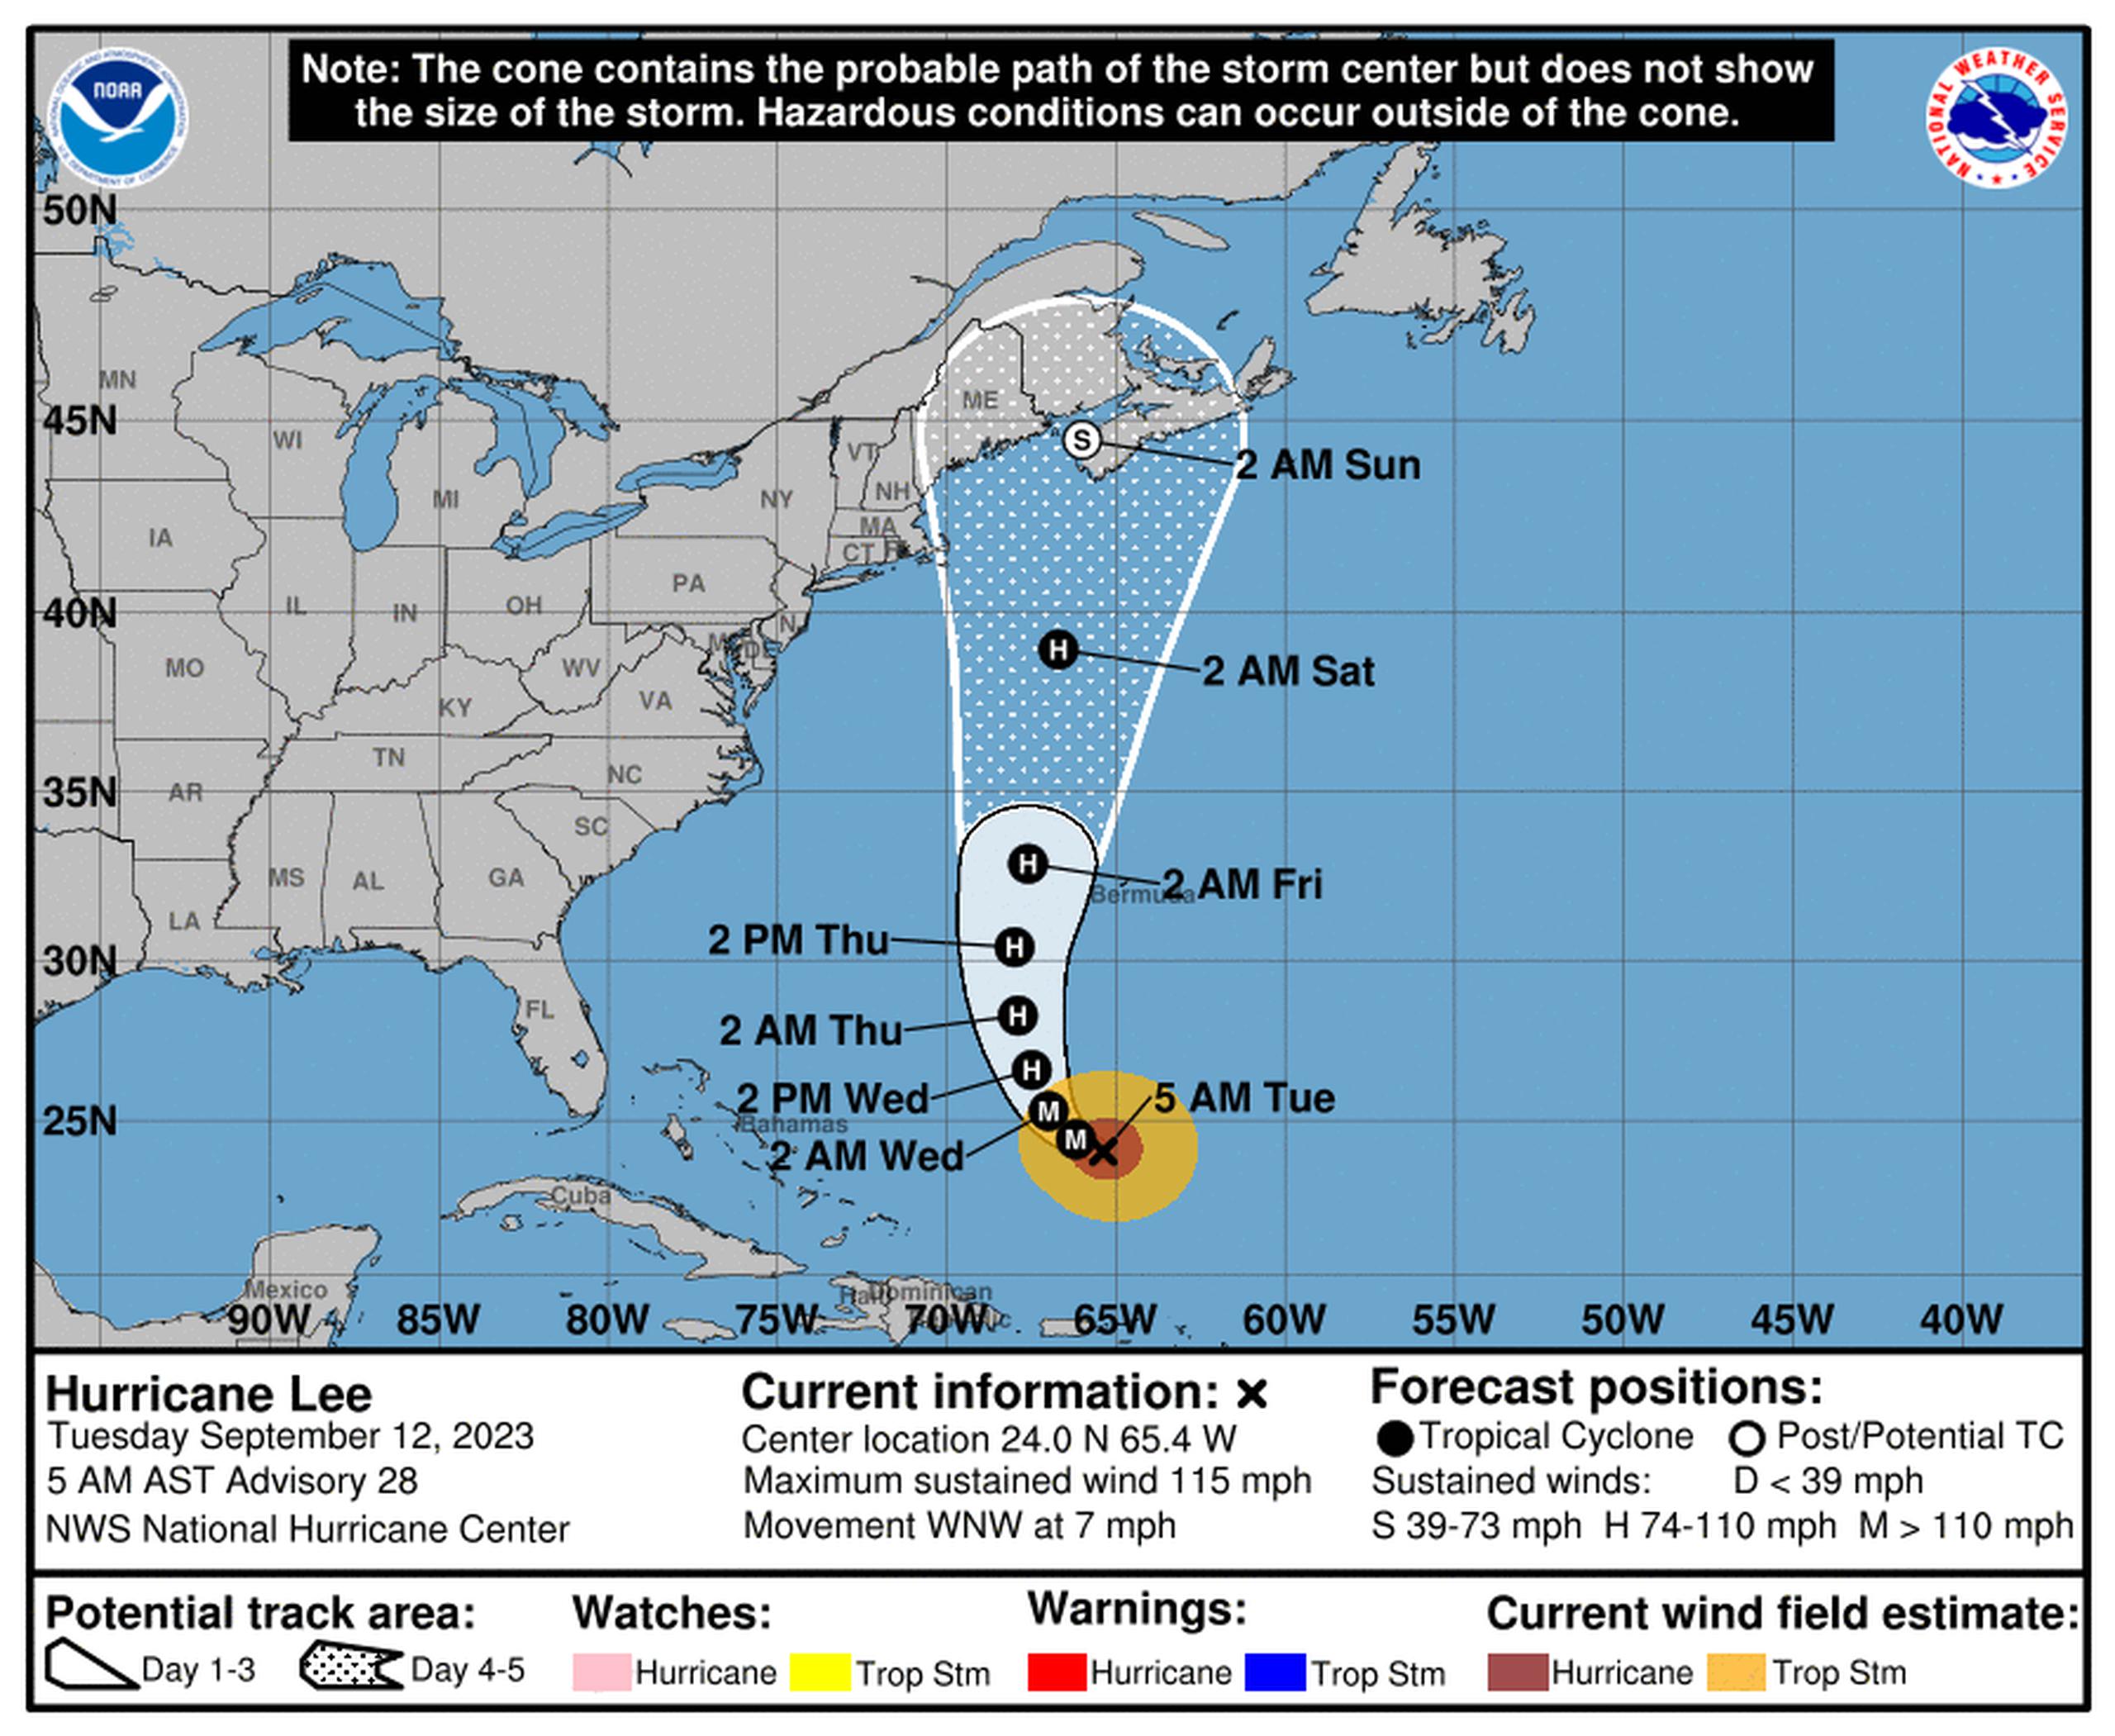 Pronóstico del huracán Lee emitido a las 5:00 de la mañana del 12 de septiembre de 2023.